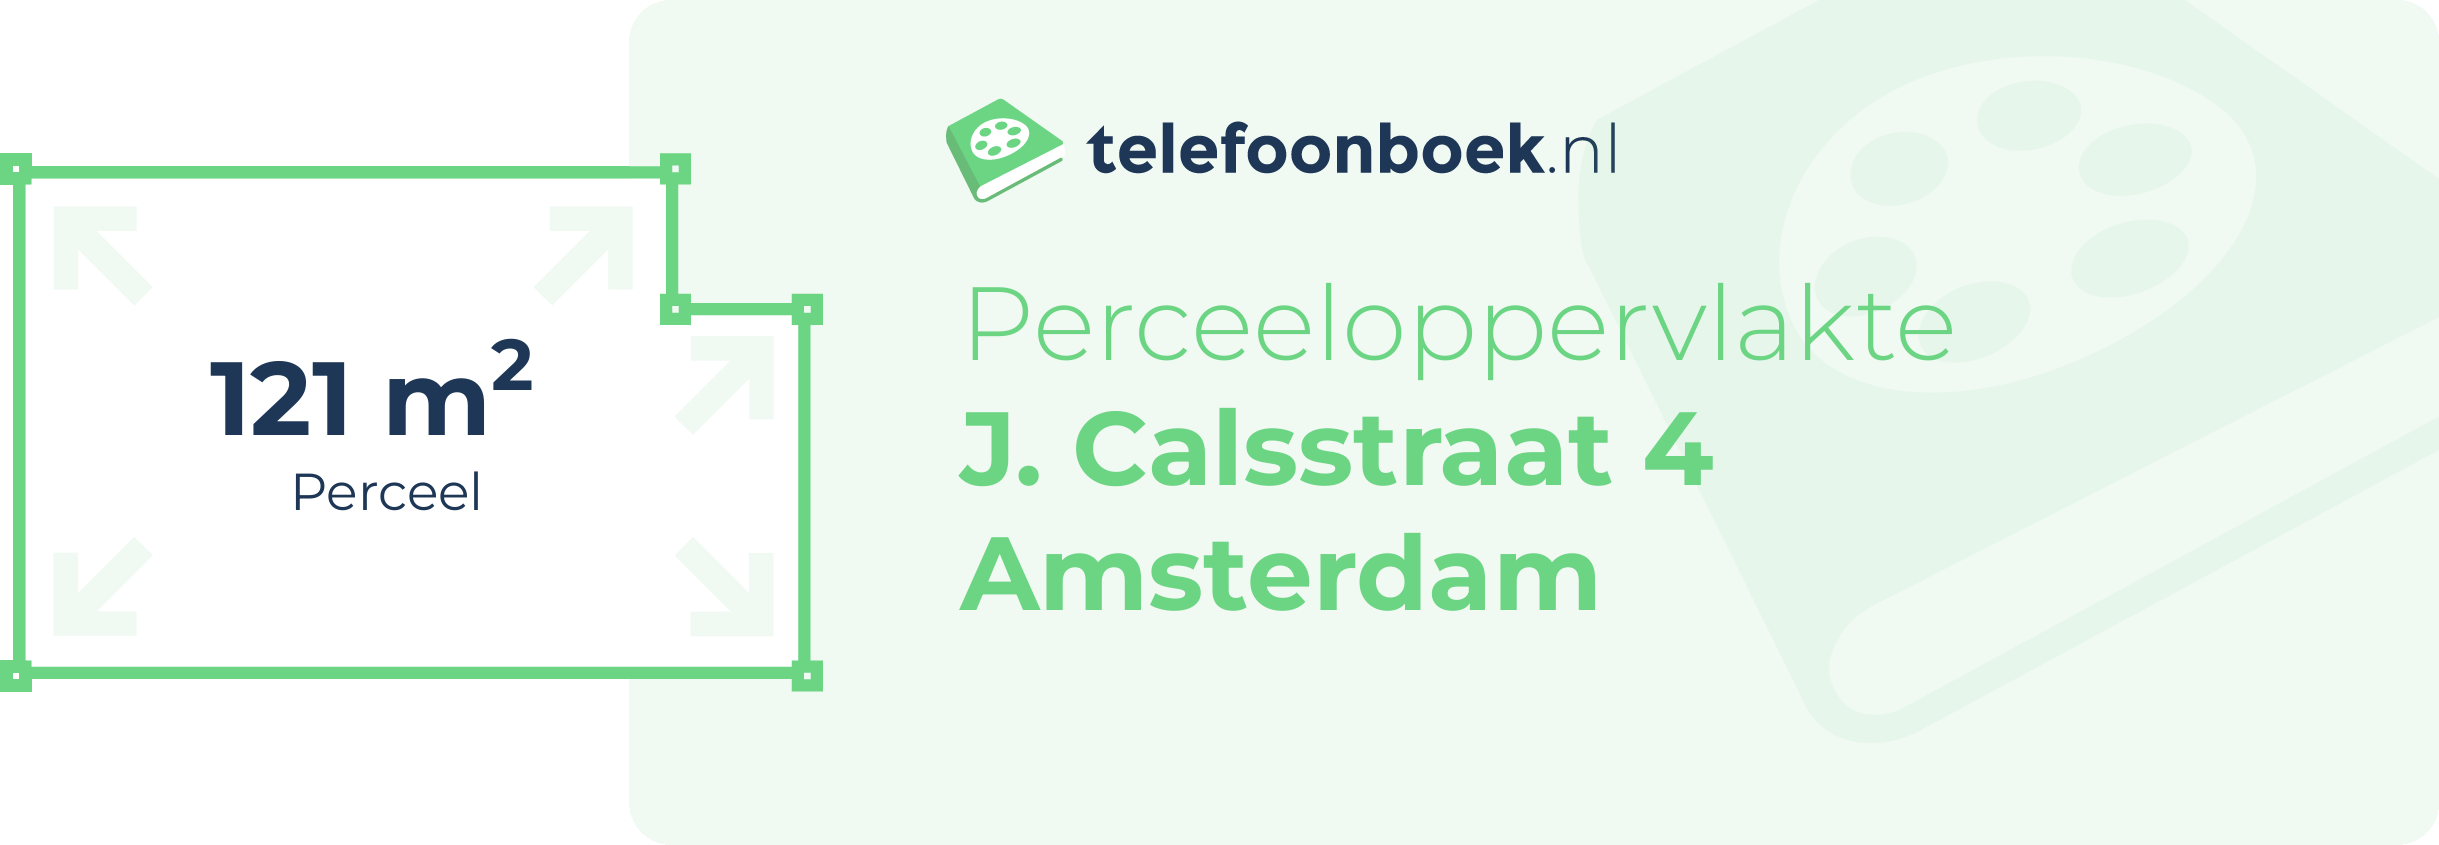 Perceeloppervlakte J. Calsstraat 4 Amsterdam